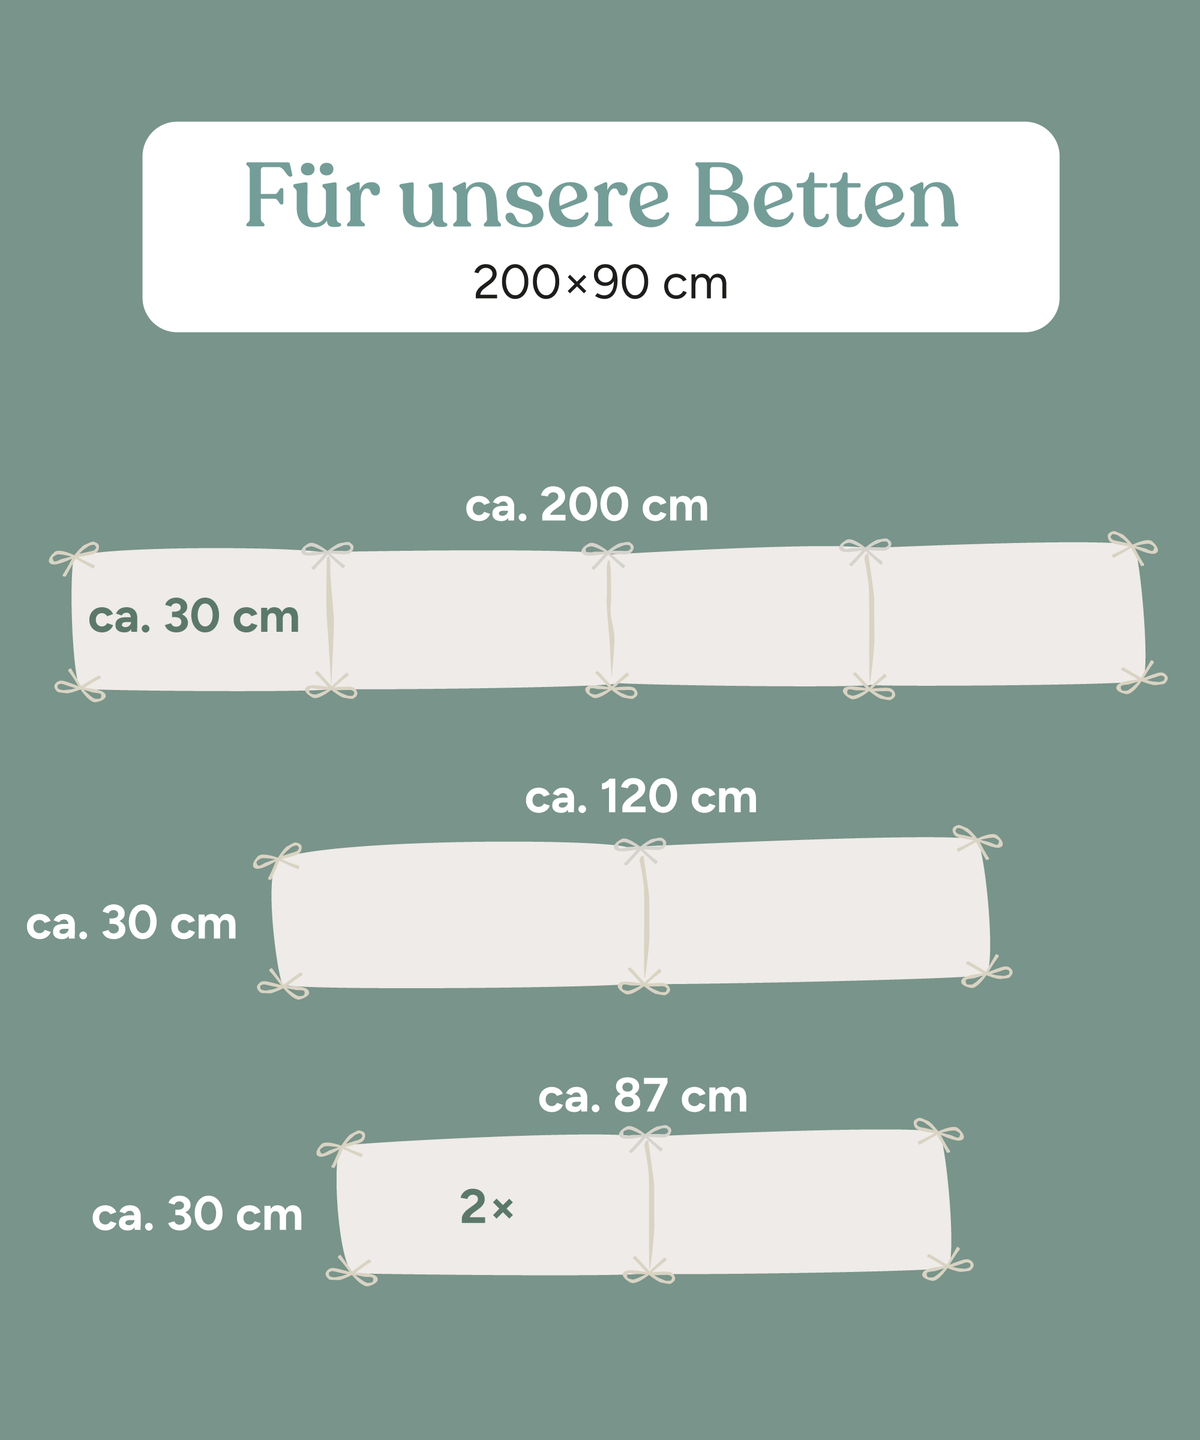 Größenübersicht der einzelnen Elemente der Bettumrandung für Betten 200 x 90 cm.